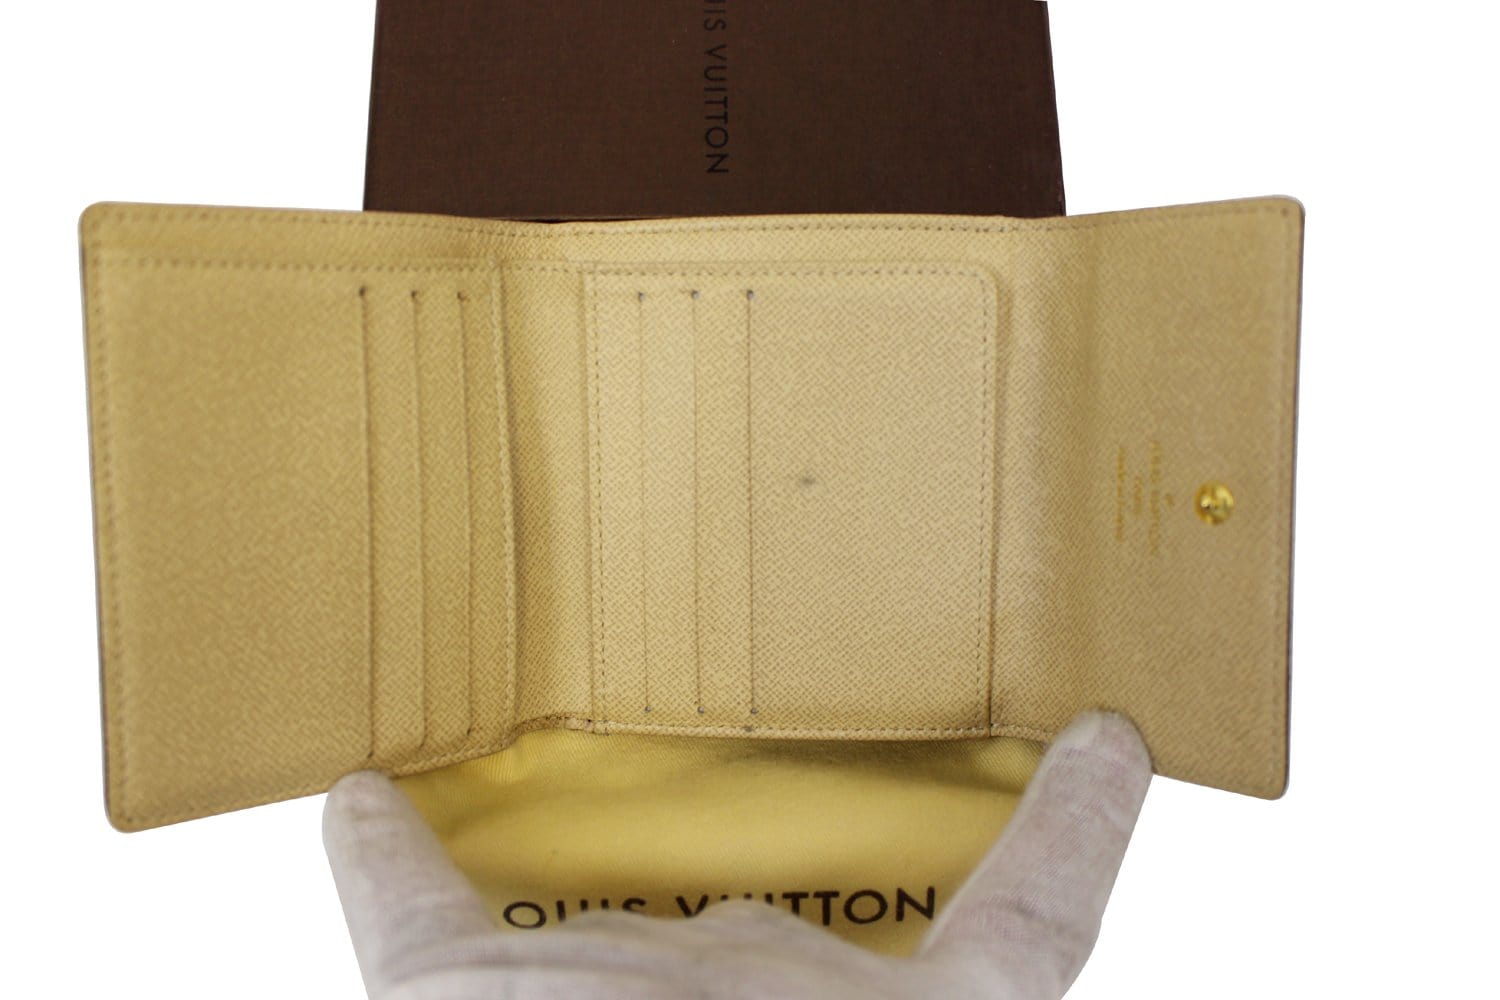 Louis Vuitton Limited Edition Monogram Canvas Dentelle Belt Size